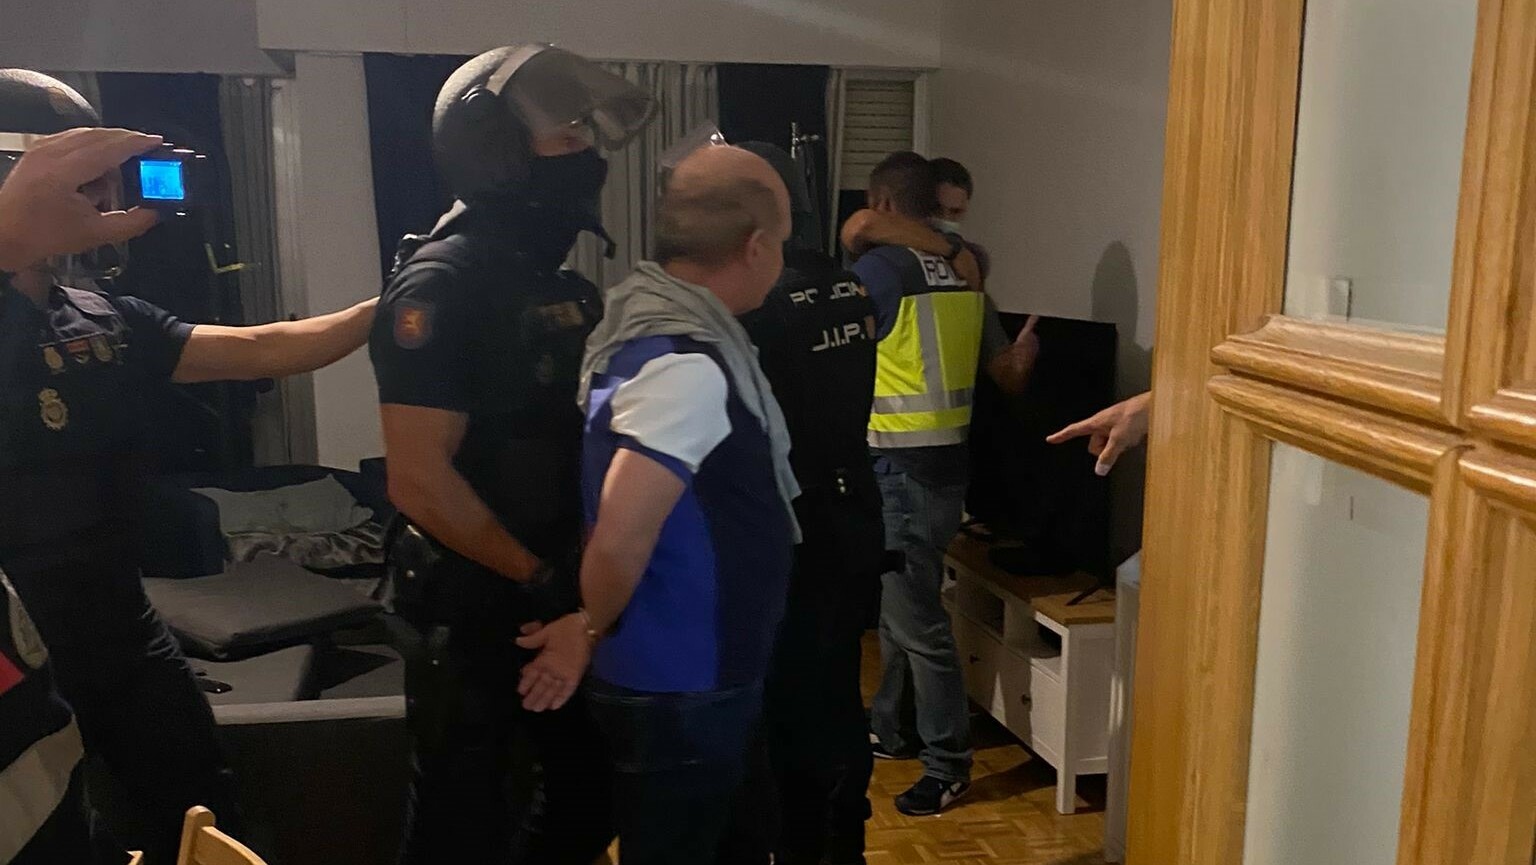 La Policía detiene en Madrid al 'Pollo Carvajal', prófugo de la Justicia y buscado para su extradición a EEUU